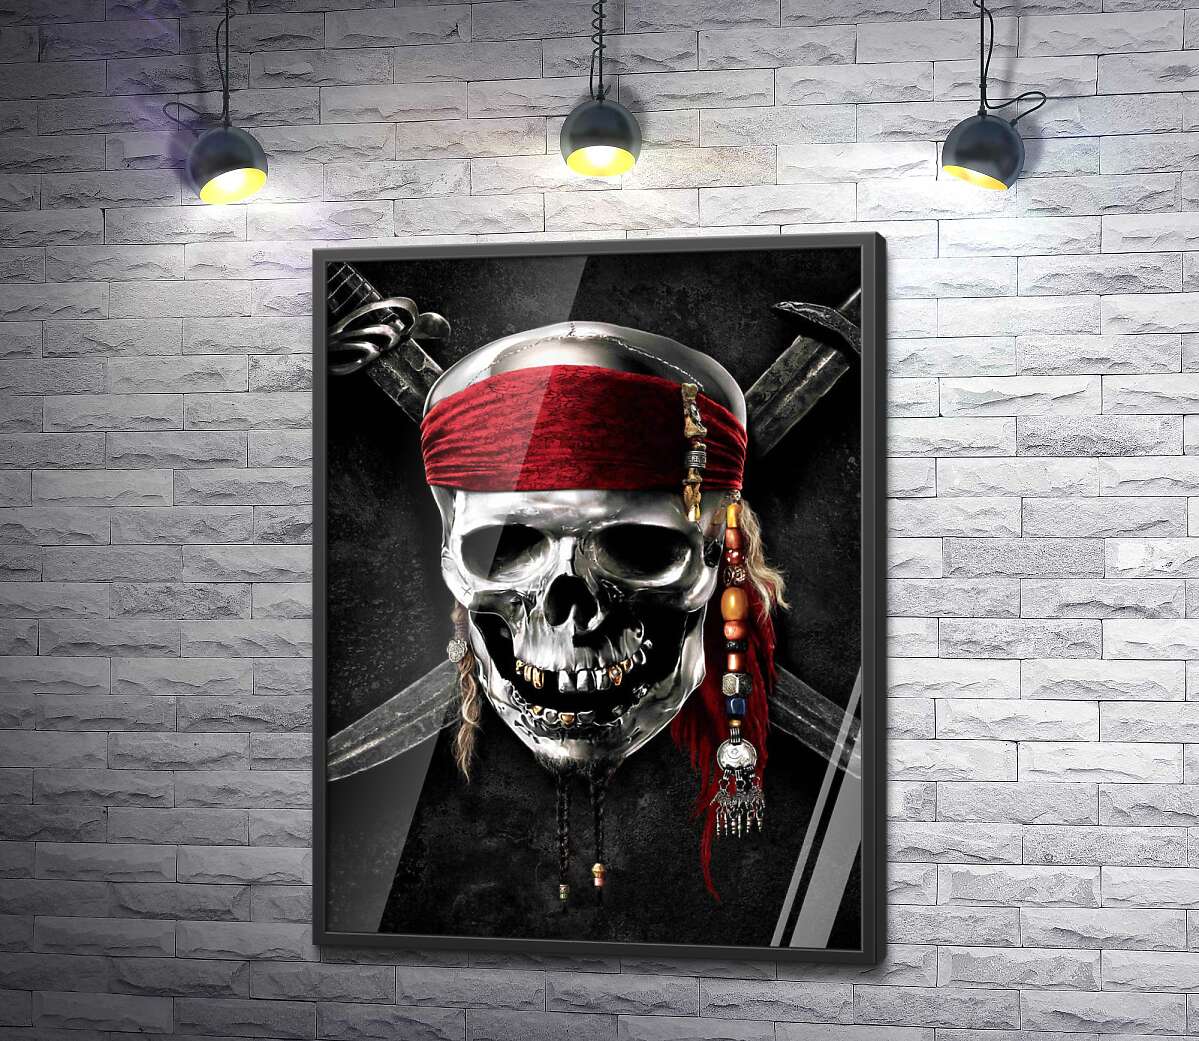 постер Знаменитый череп Джека Воробья (Jack Sparrow) на фильме "Пираты Карибского моря" (Pirates of the Caribbean)